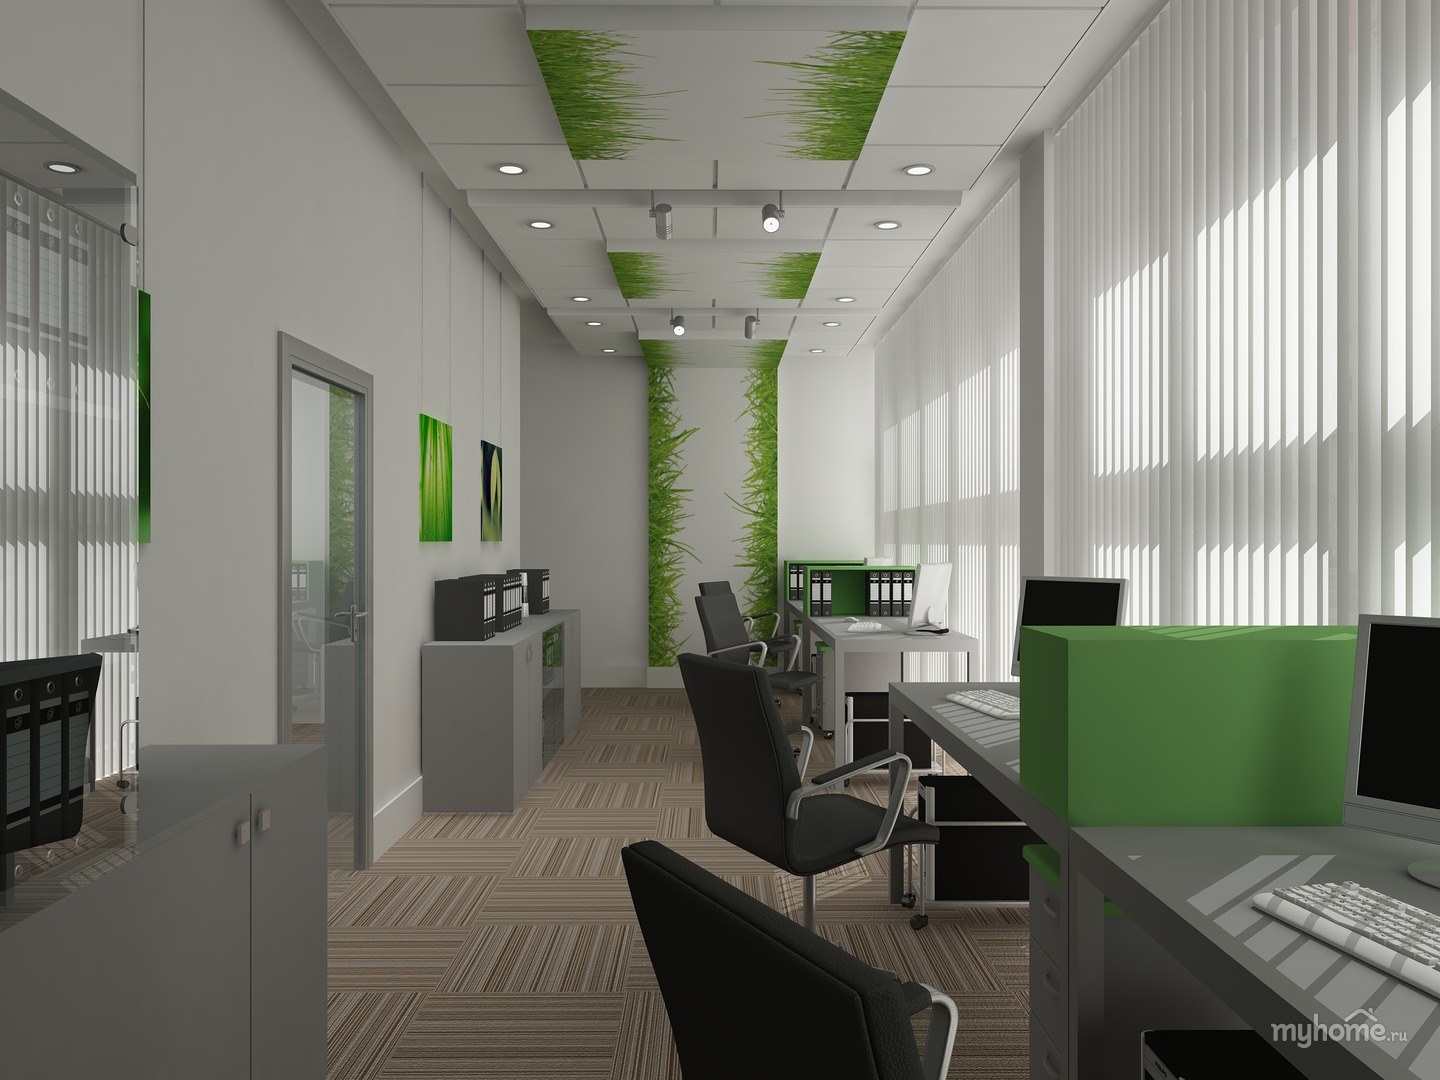 Офис в зеленых тонах